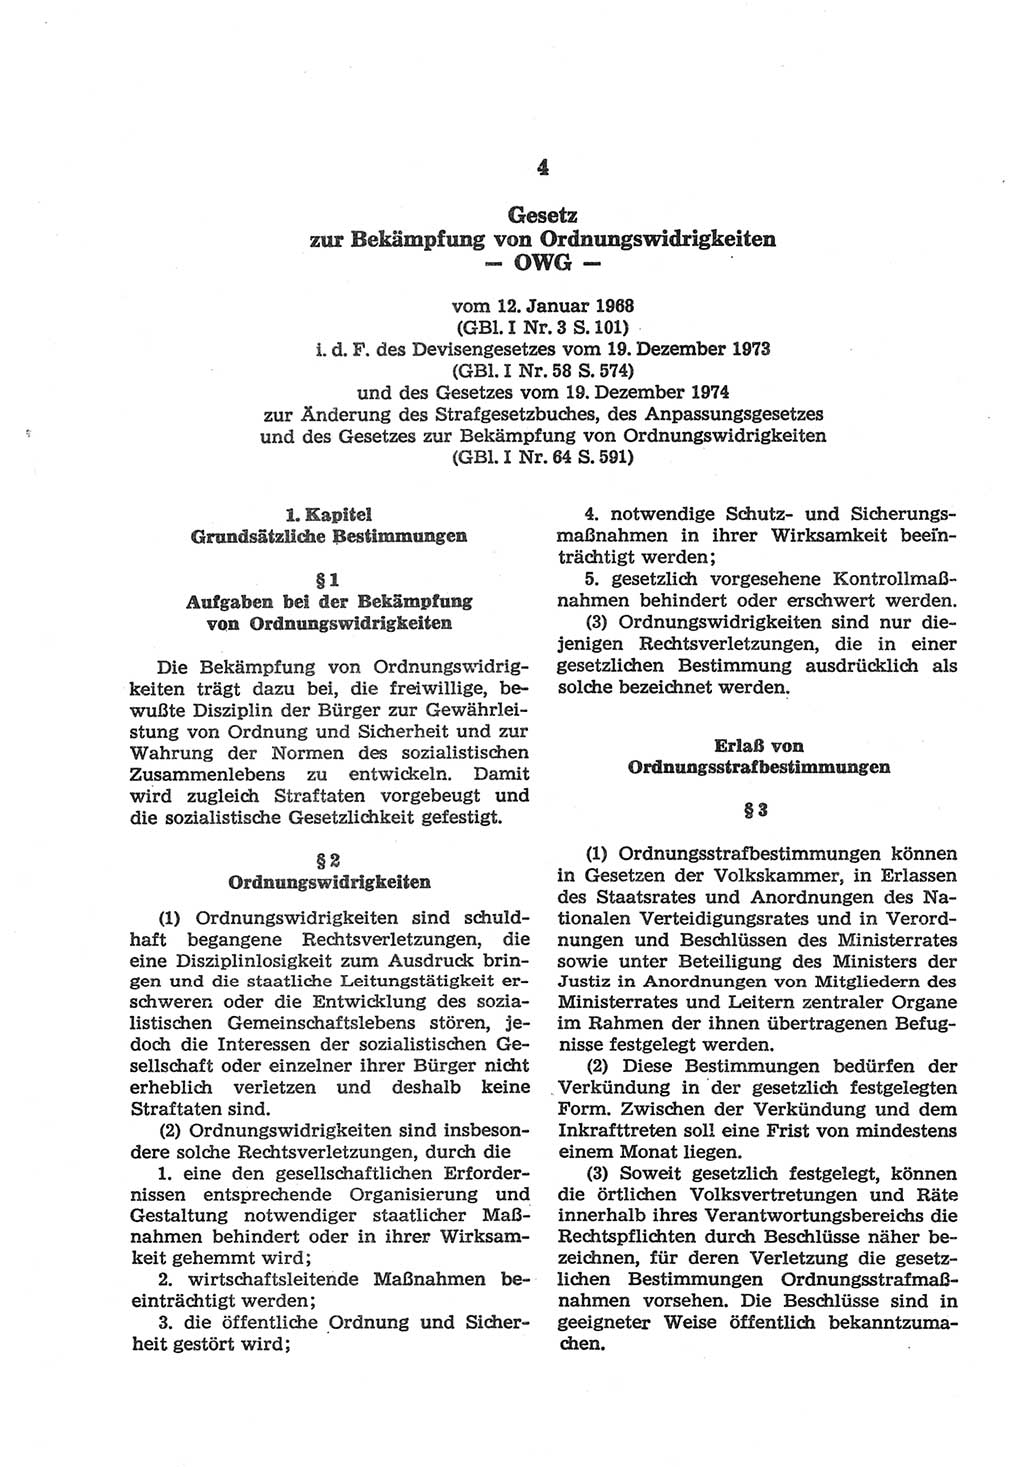 Strafgesetzbuch (StGB) der Deutschen Demokratischen Republik (DDR) und angrenzende Gesetze und Bestimmungen 1977, Seite 102 (StGB DDR Ges. Best. 1977, S. 102)